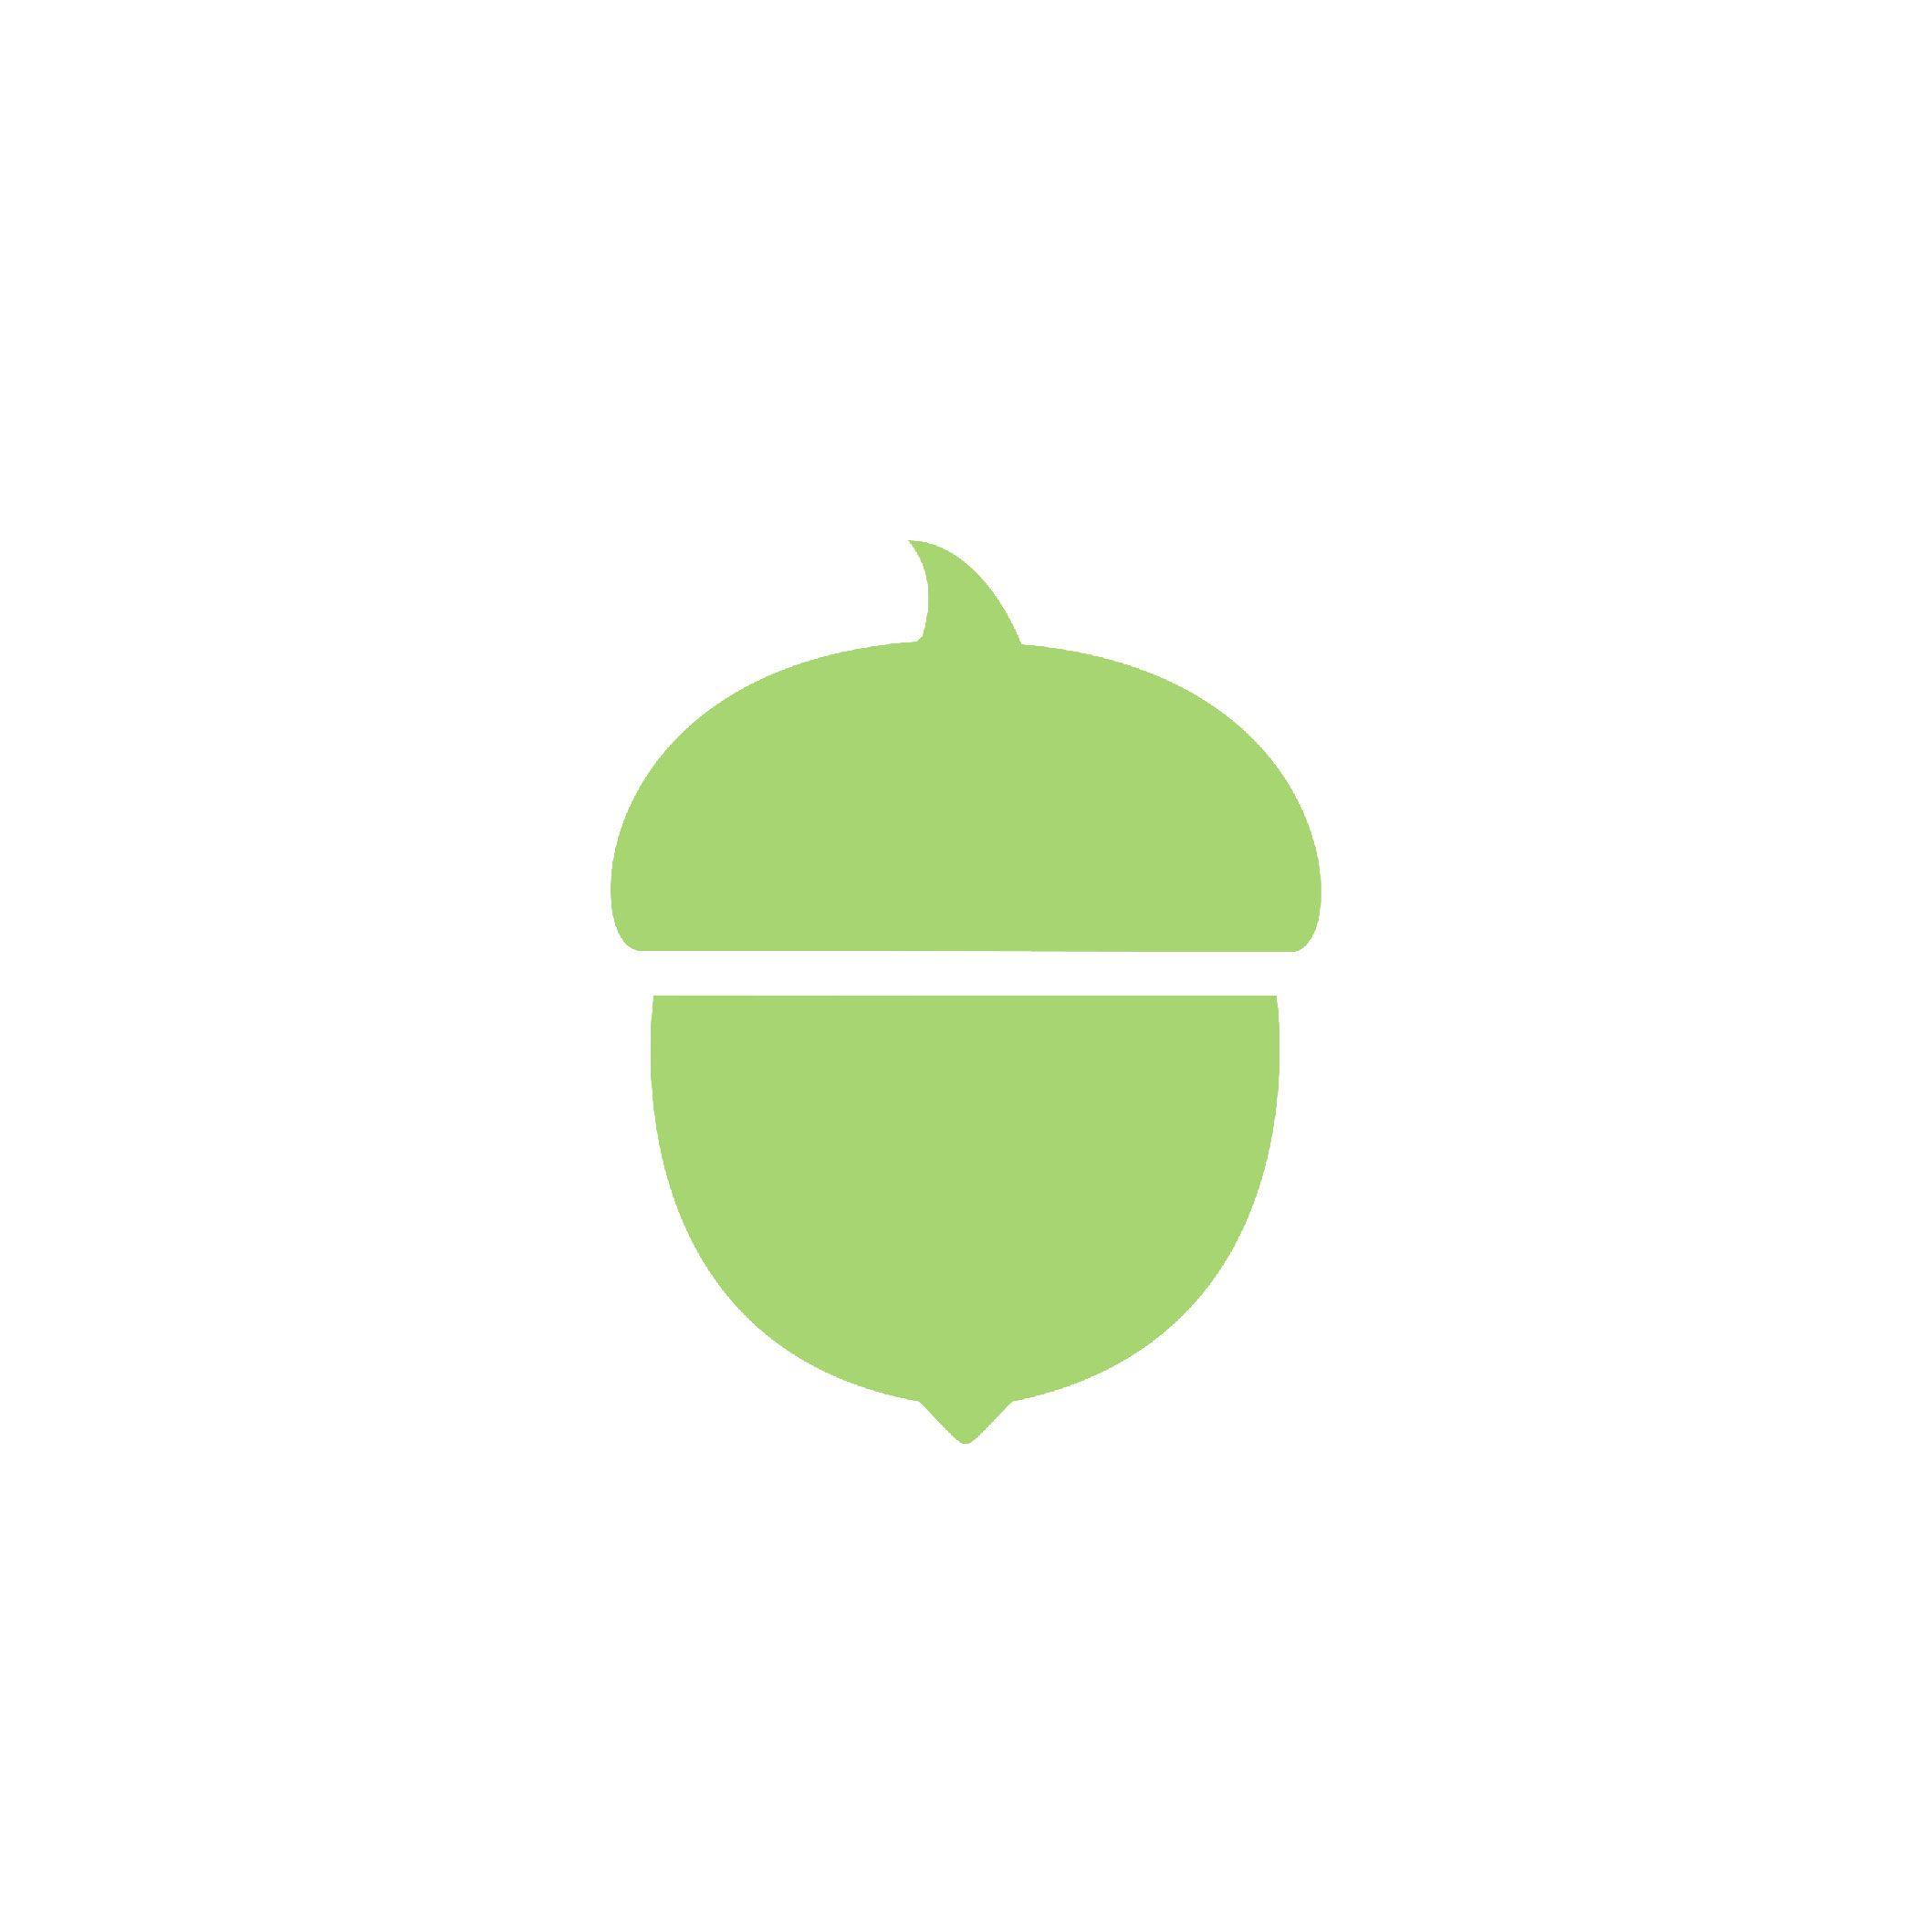 Acorn Logo - Image result for acorn logo | Acorn Logo | Pinterest | Logos, Logo ...